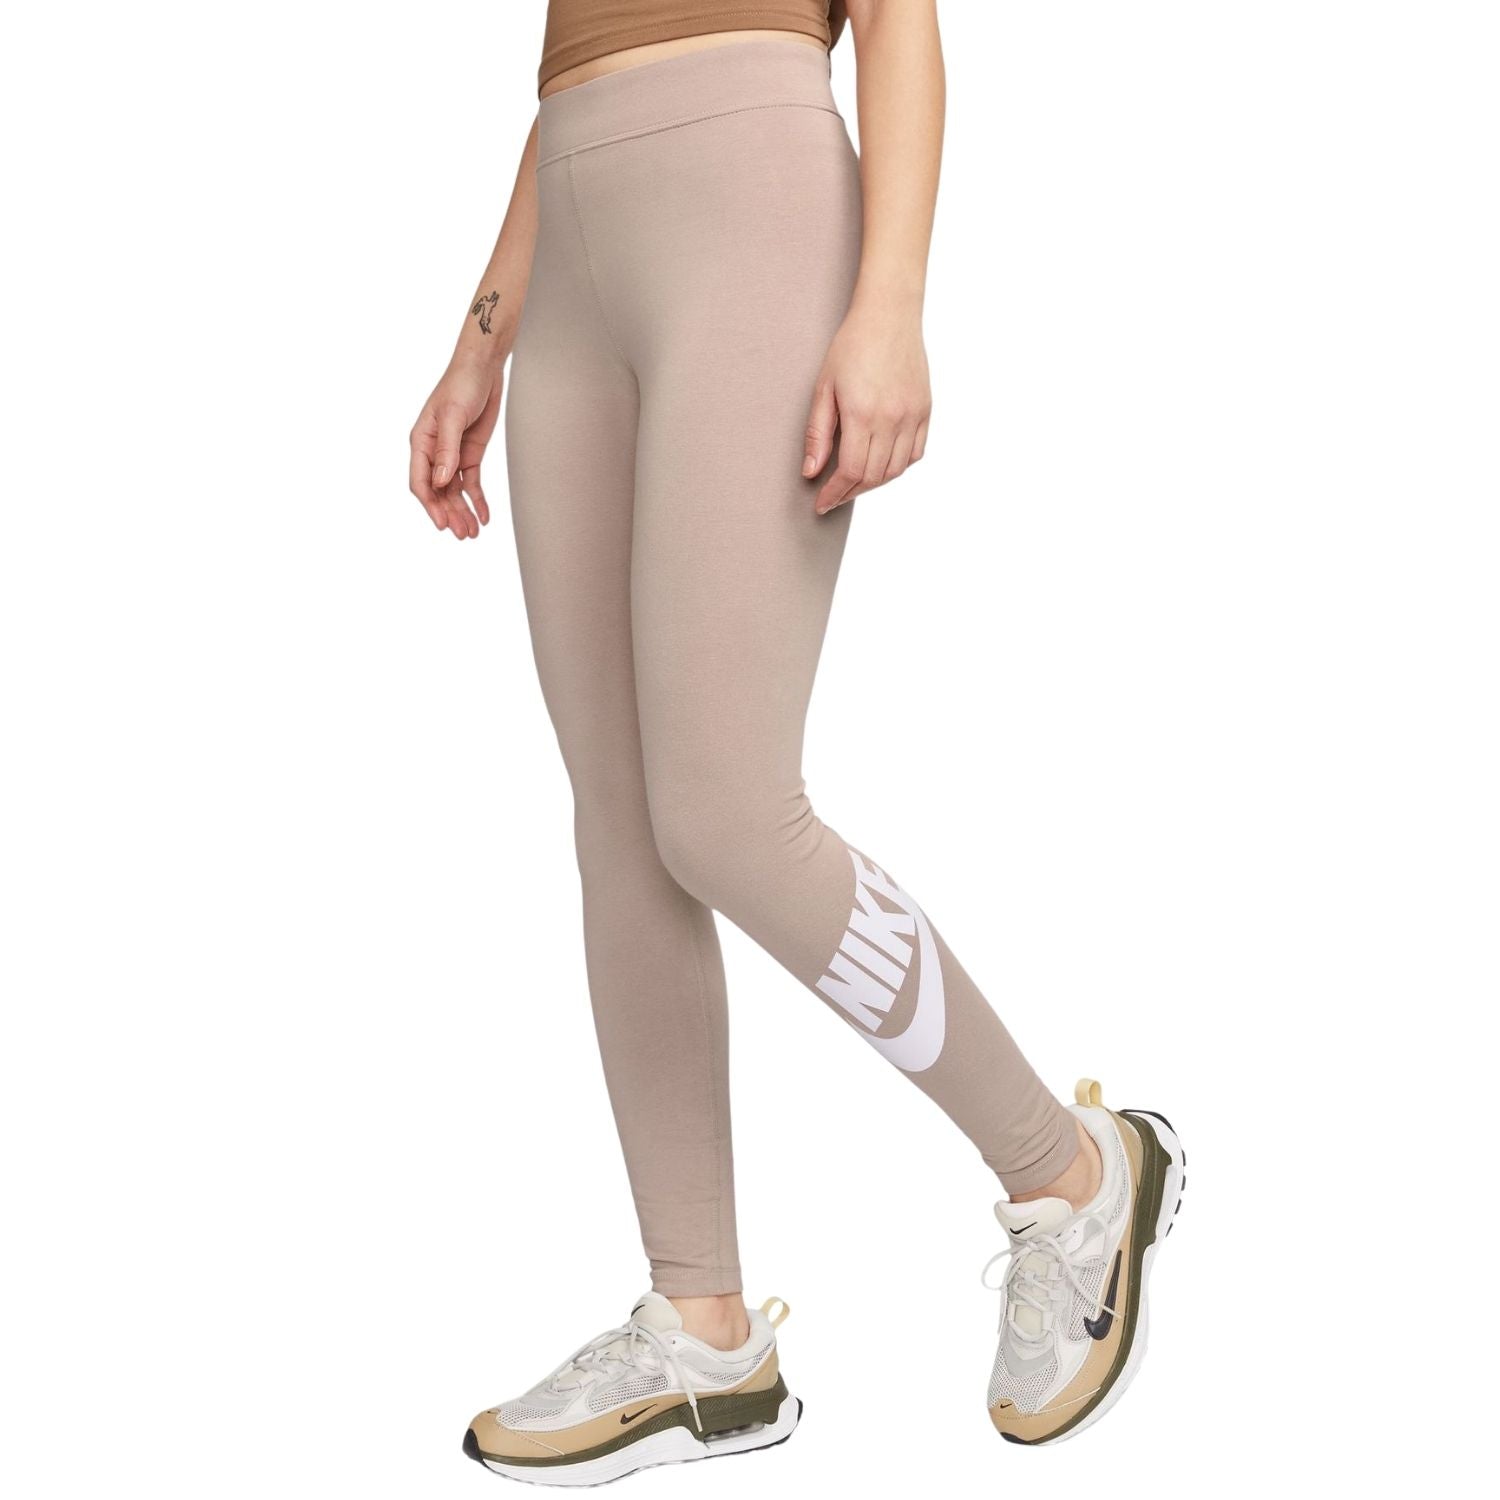 Women's Legging Nike sportswear essential - Women's clothing